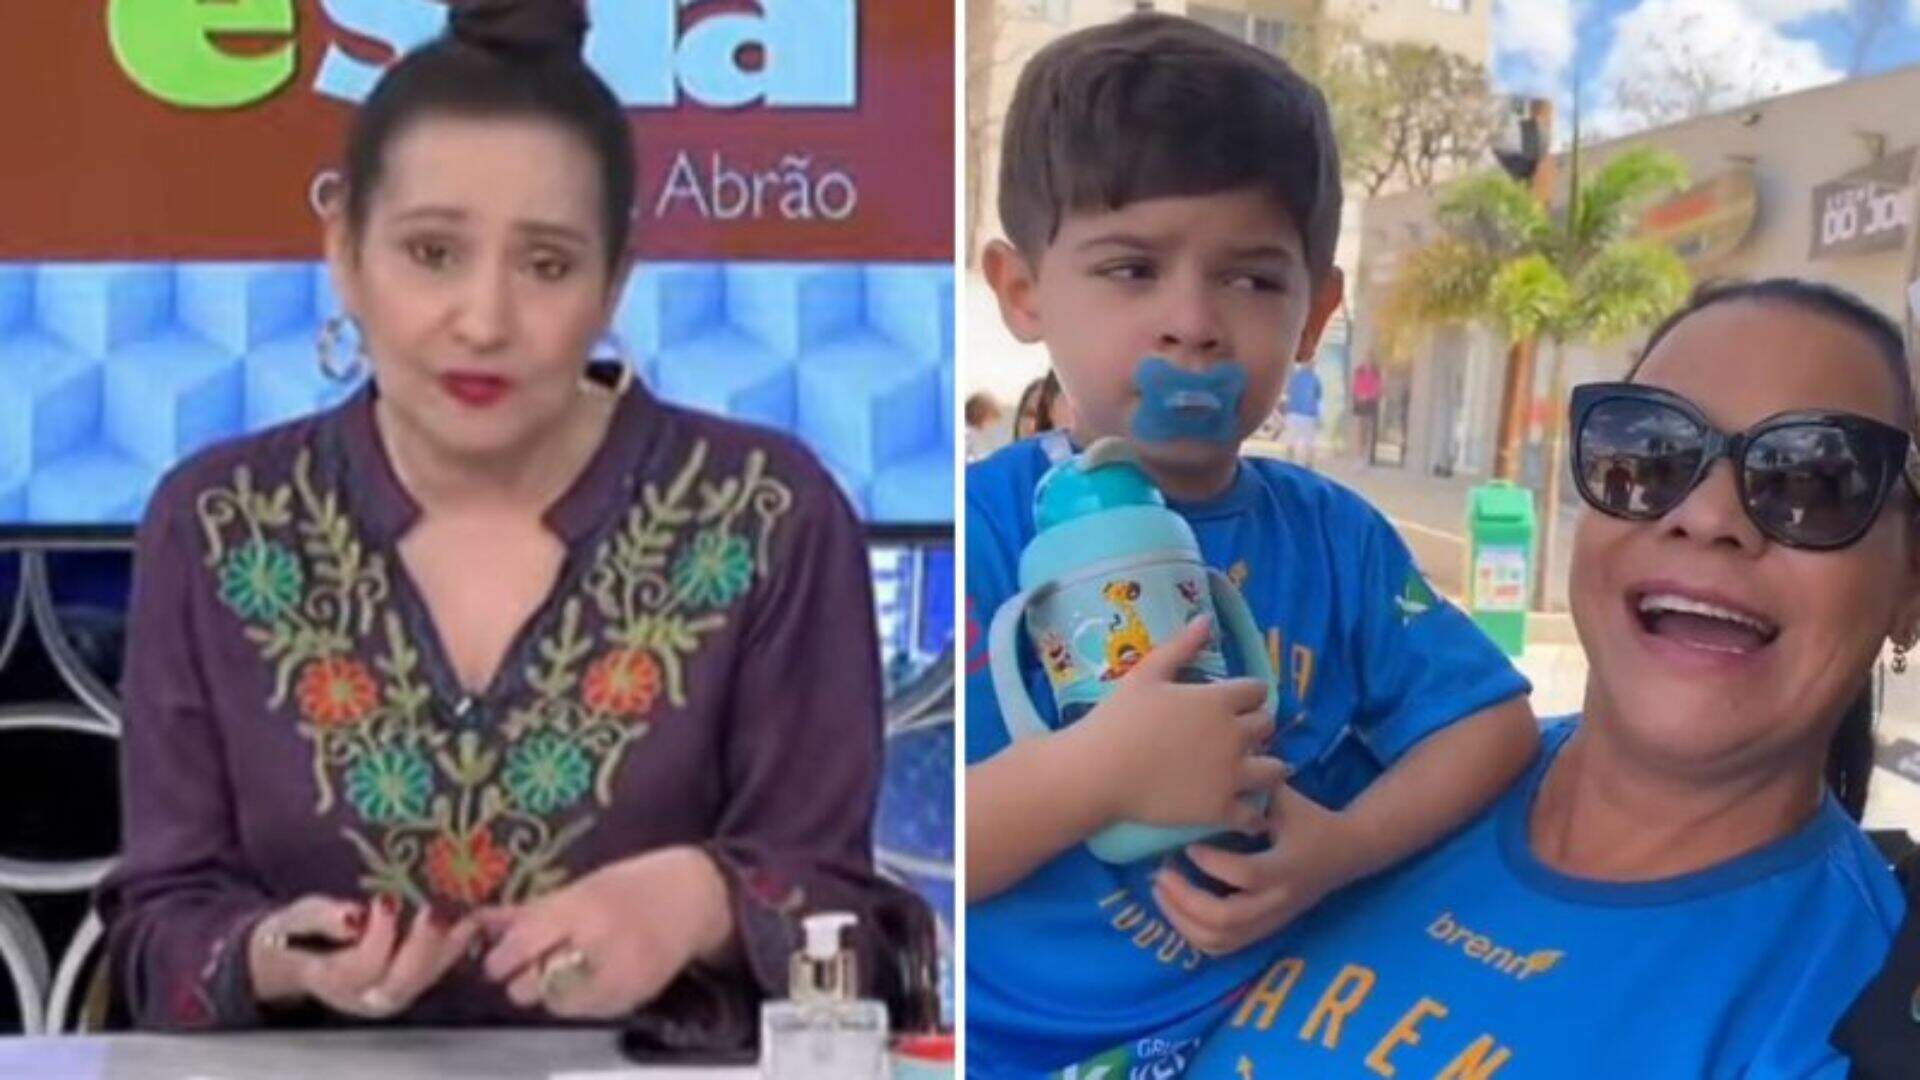 Sonia Abrão crítica mãe de Marília Mendonça após atitude constrangedora envolvendo filho da cantora